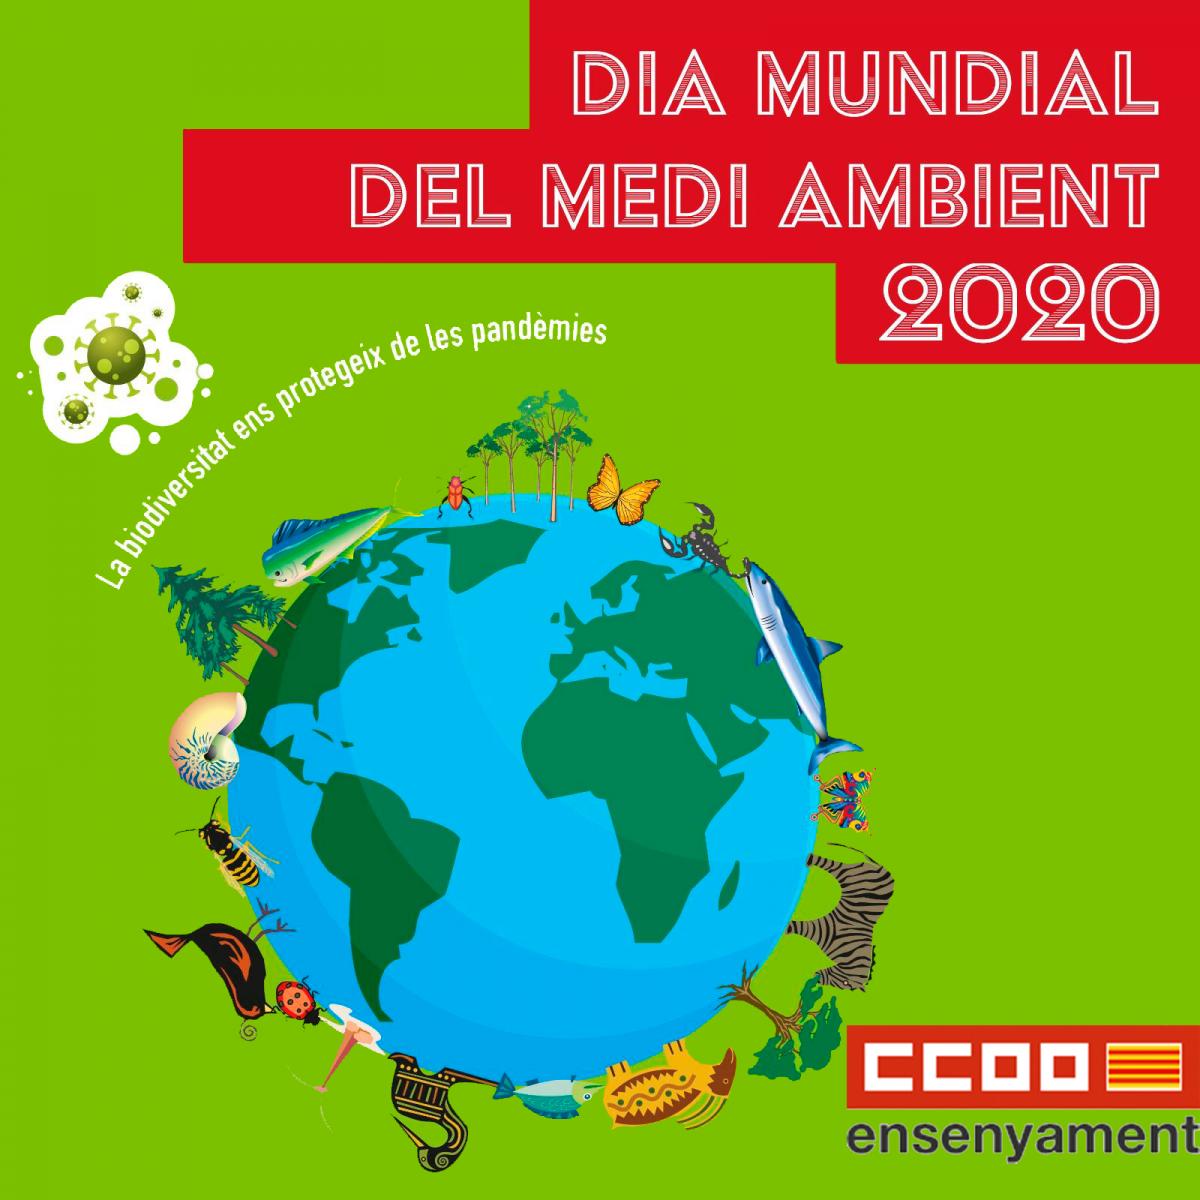 Dia Mundial del Medi Ambient 2020